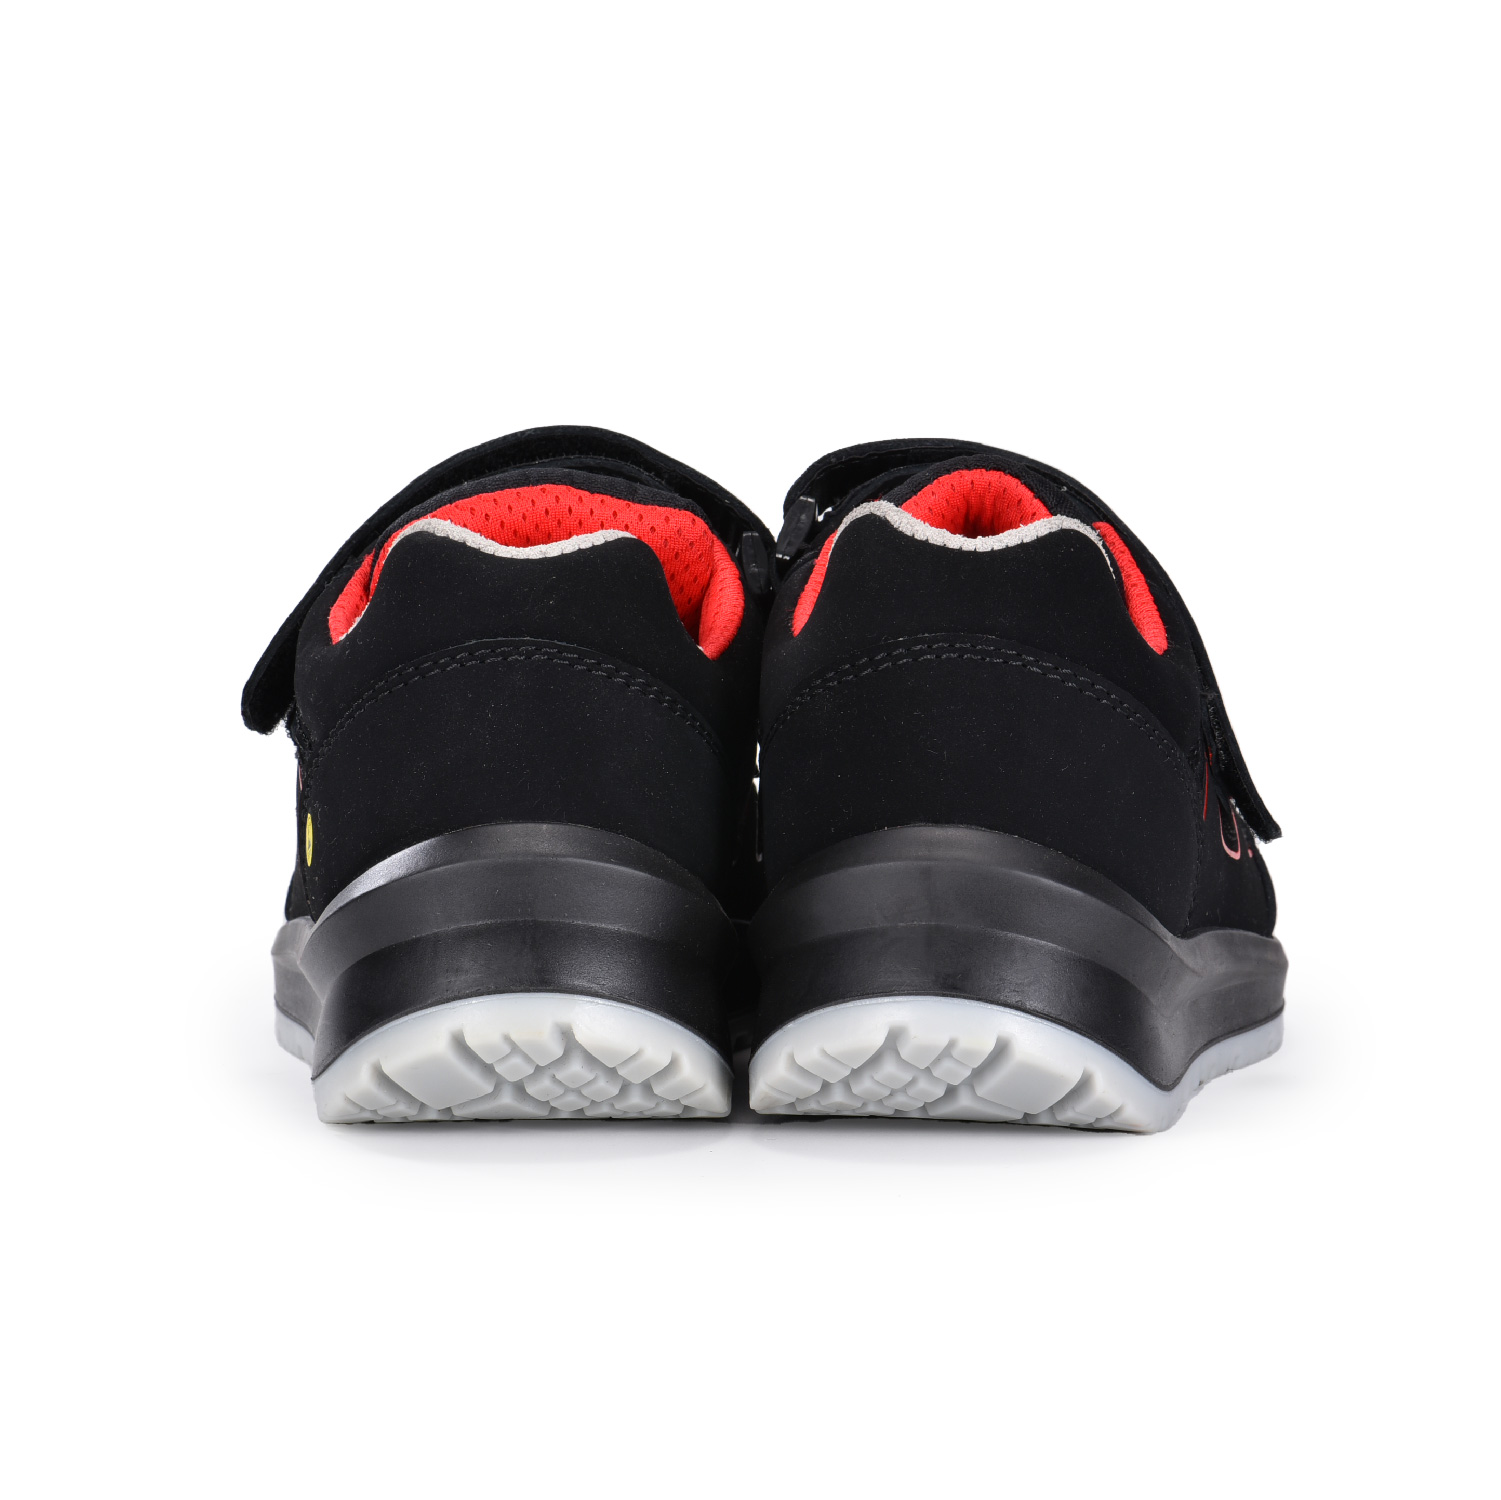 Chaussures de sécurité S1P antidérapantes avec capuchon de protection fermeture Velcro L-7518B rouge